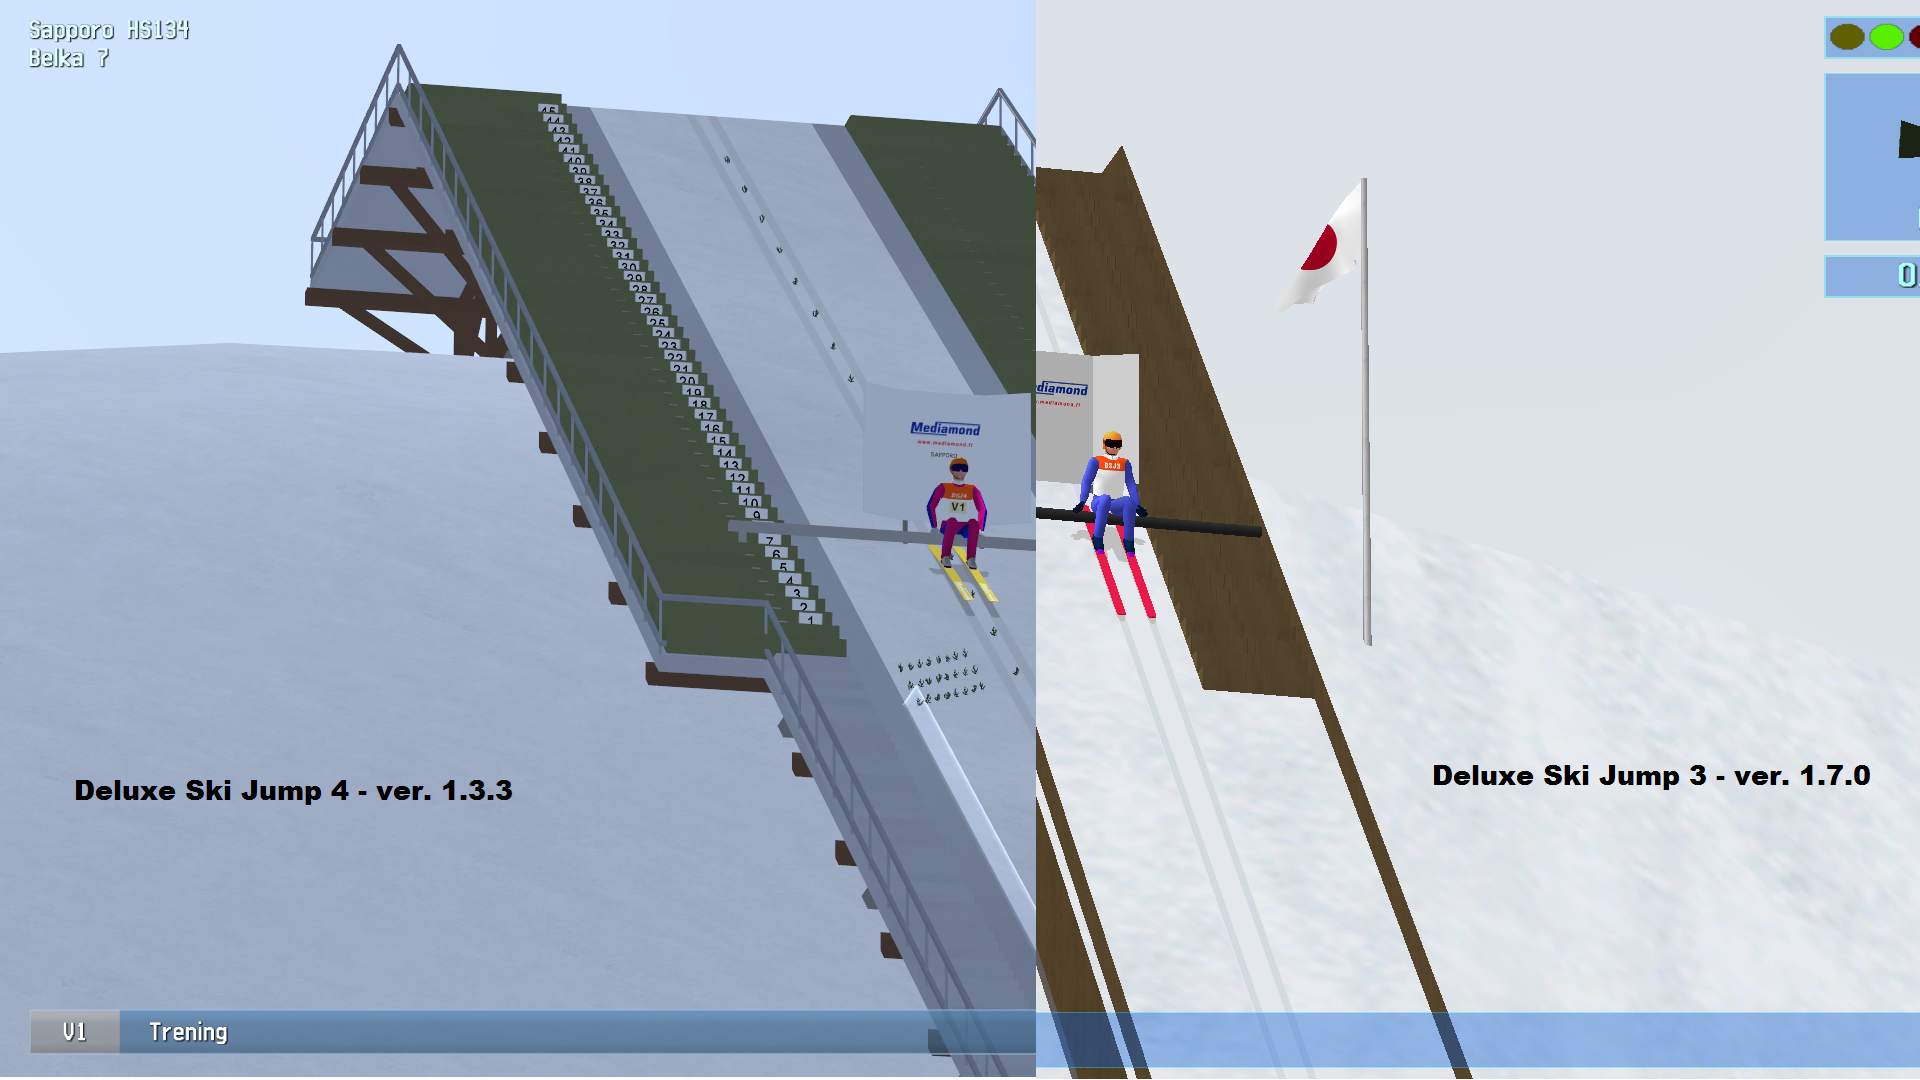 Recenzja Gry Deluxe Ski Jump 4 in Ski Jumping 5